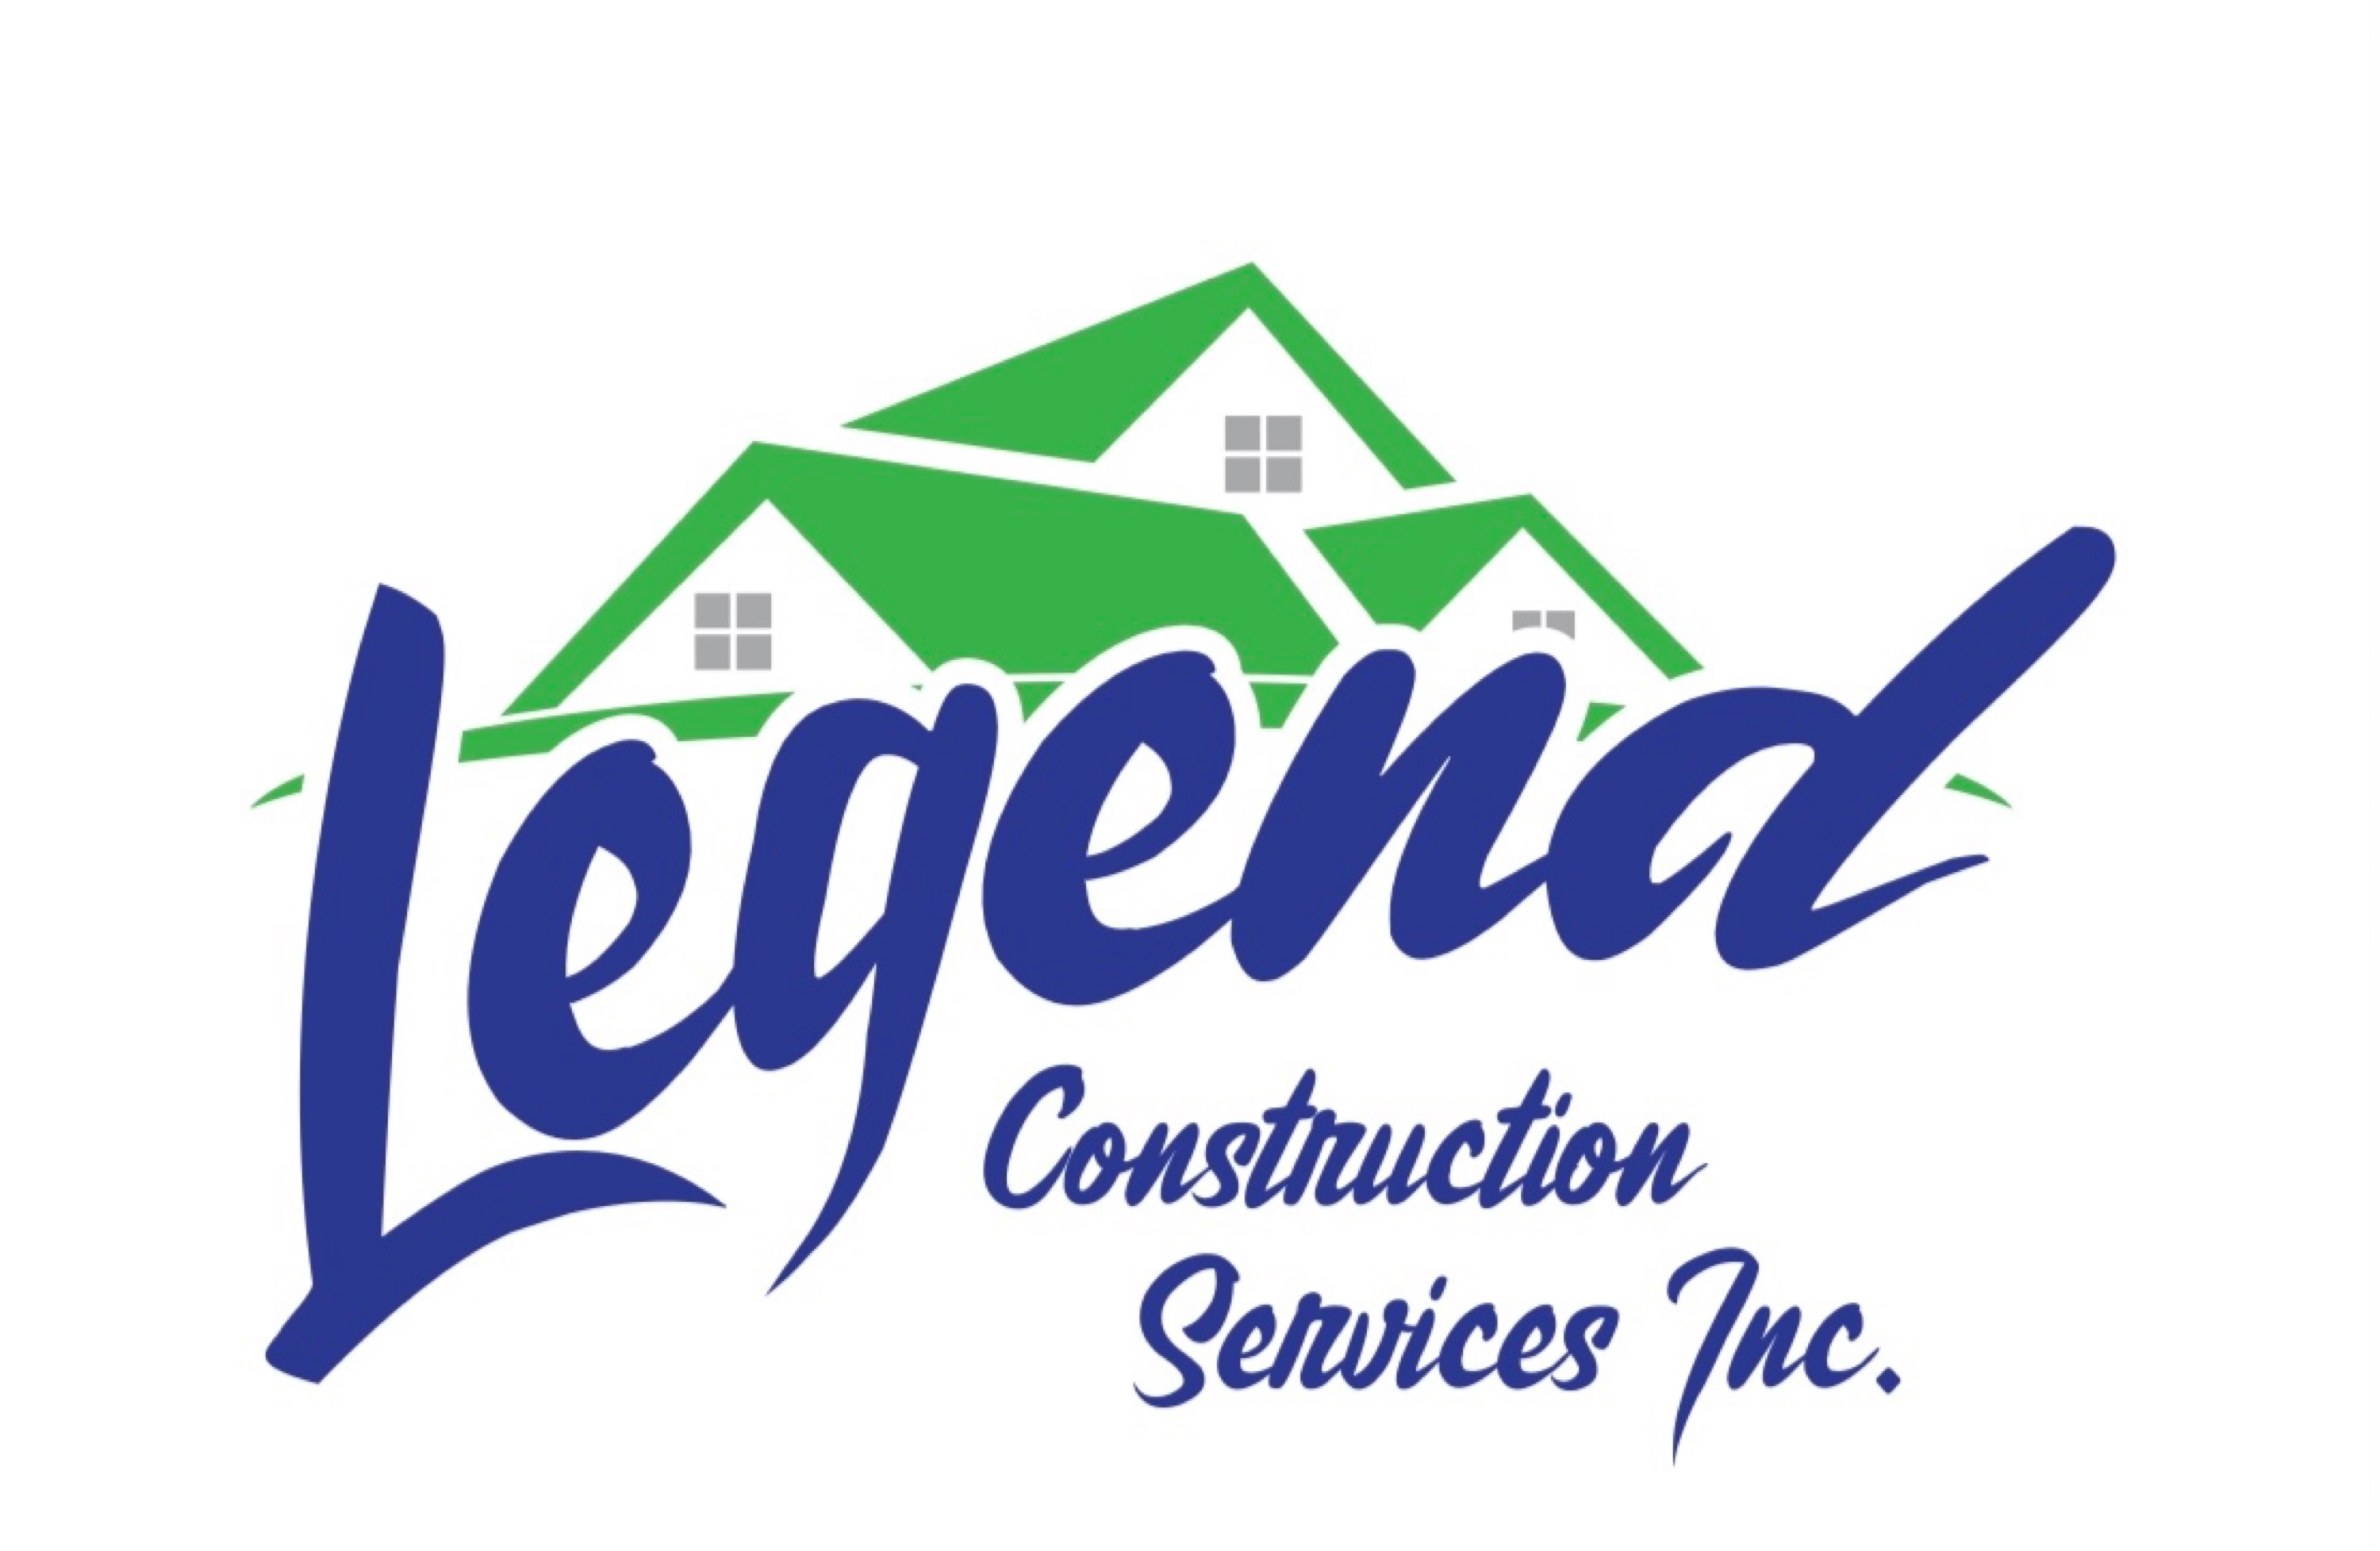 Legend Construction Services, Inc. Logo